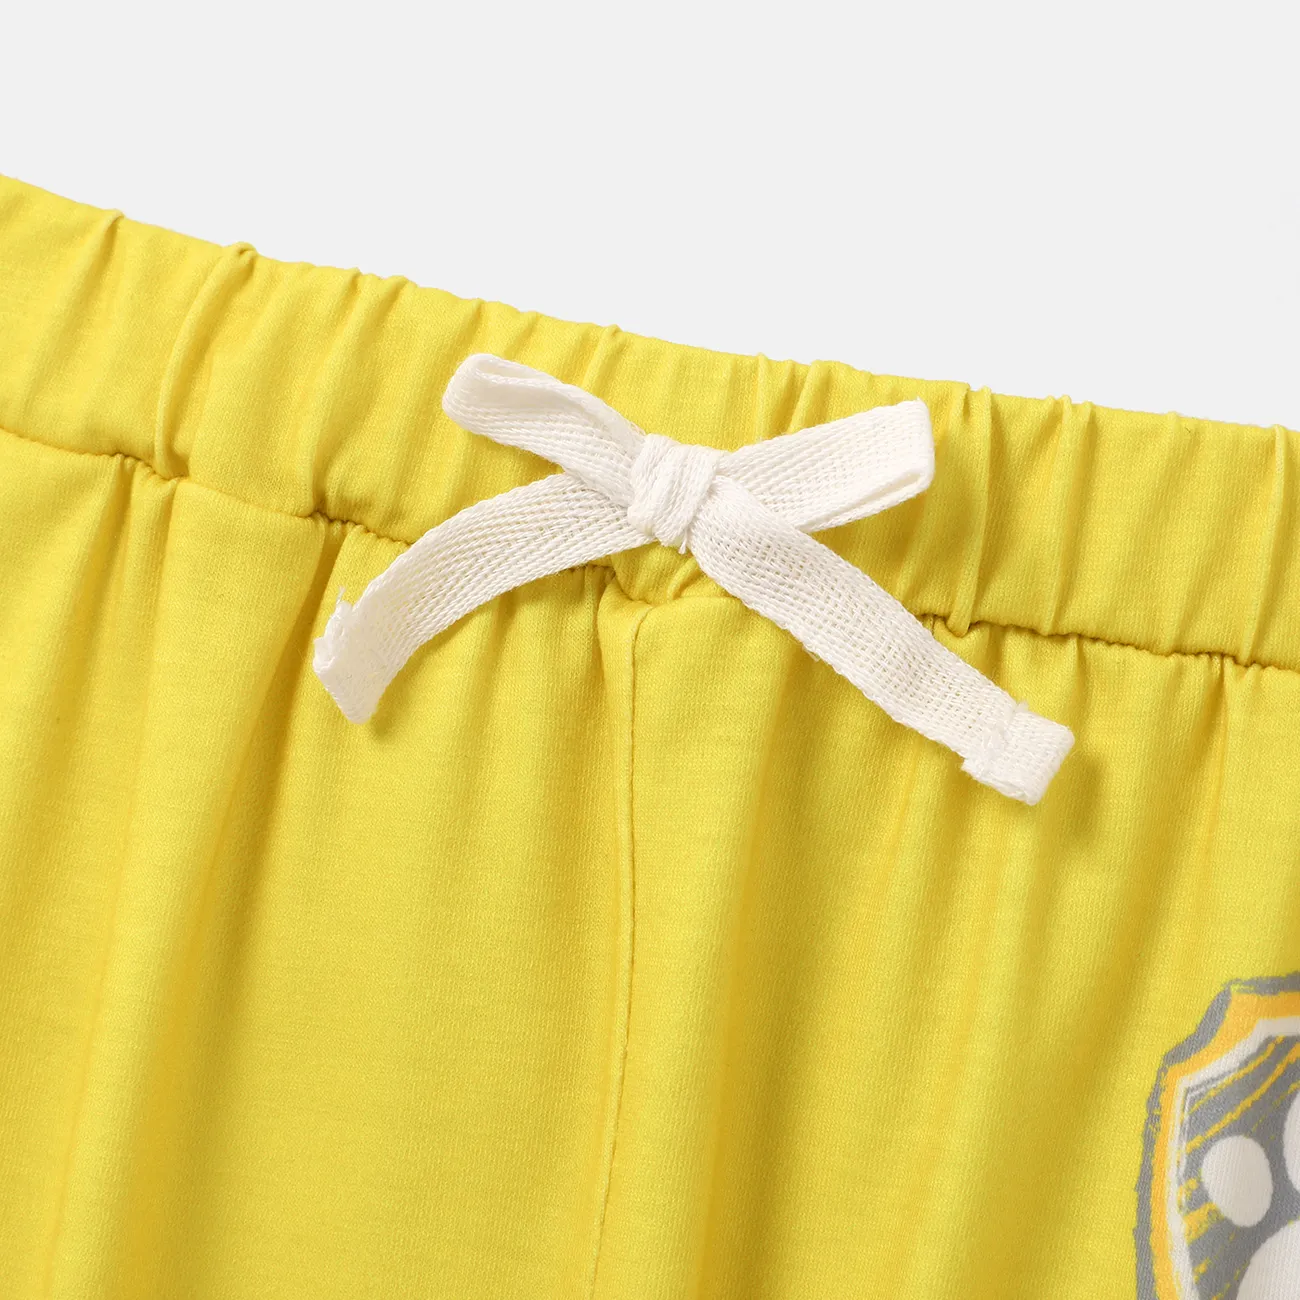 Helfer auf vier Pfoten 2 Stück Kleinkinder Unisex Kindlich Hund T-Shirt-Sets gelb big image 1